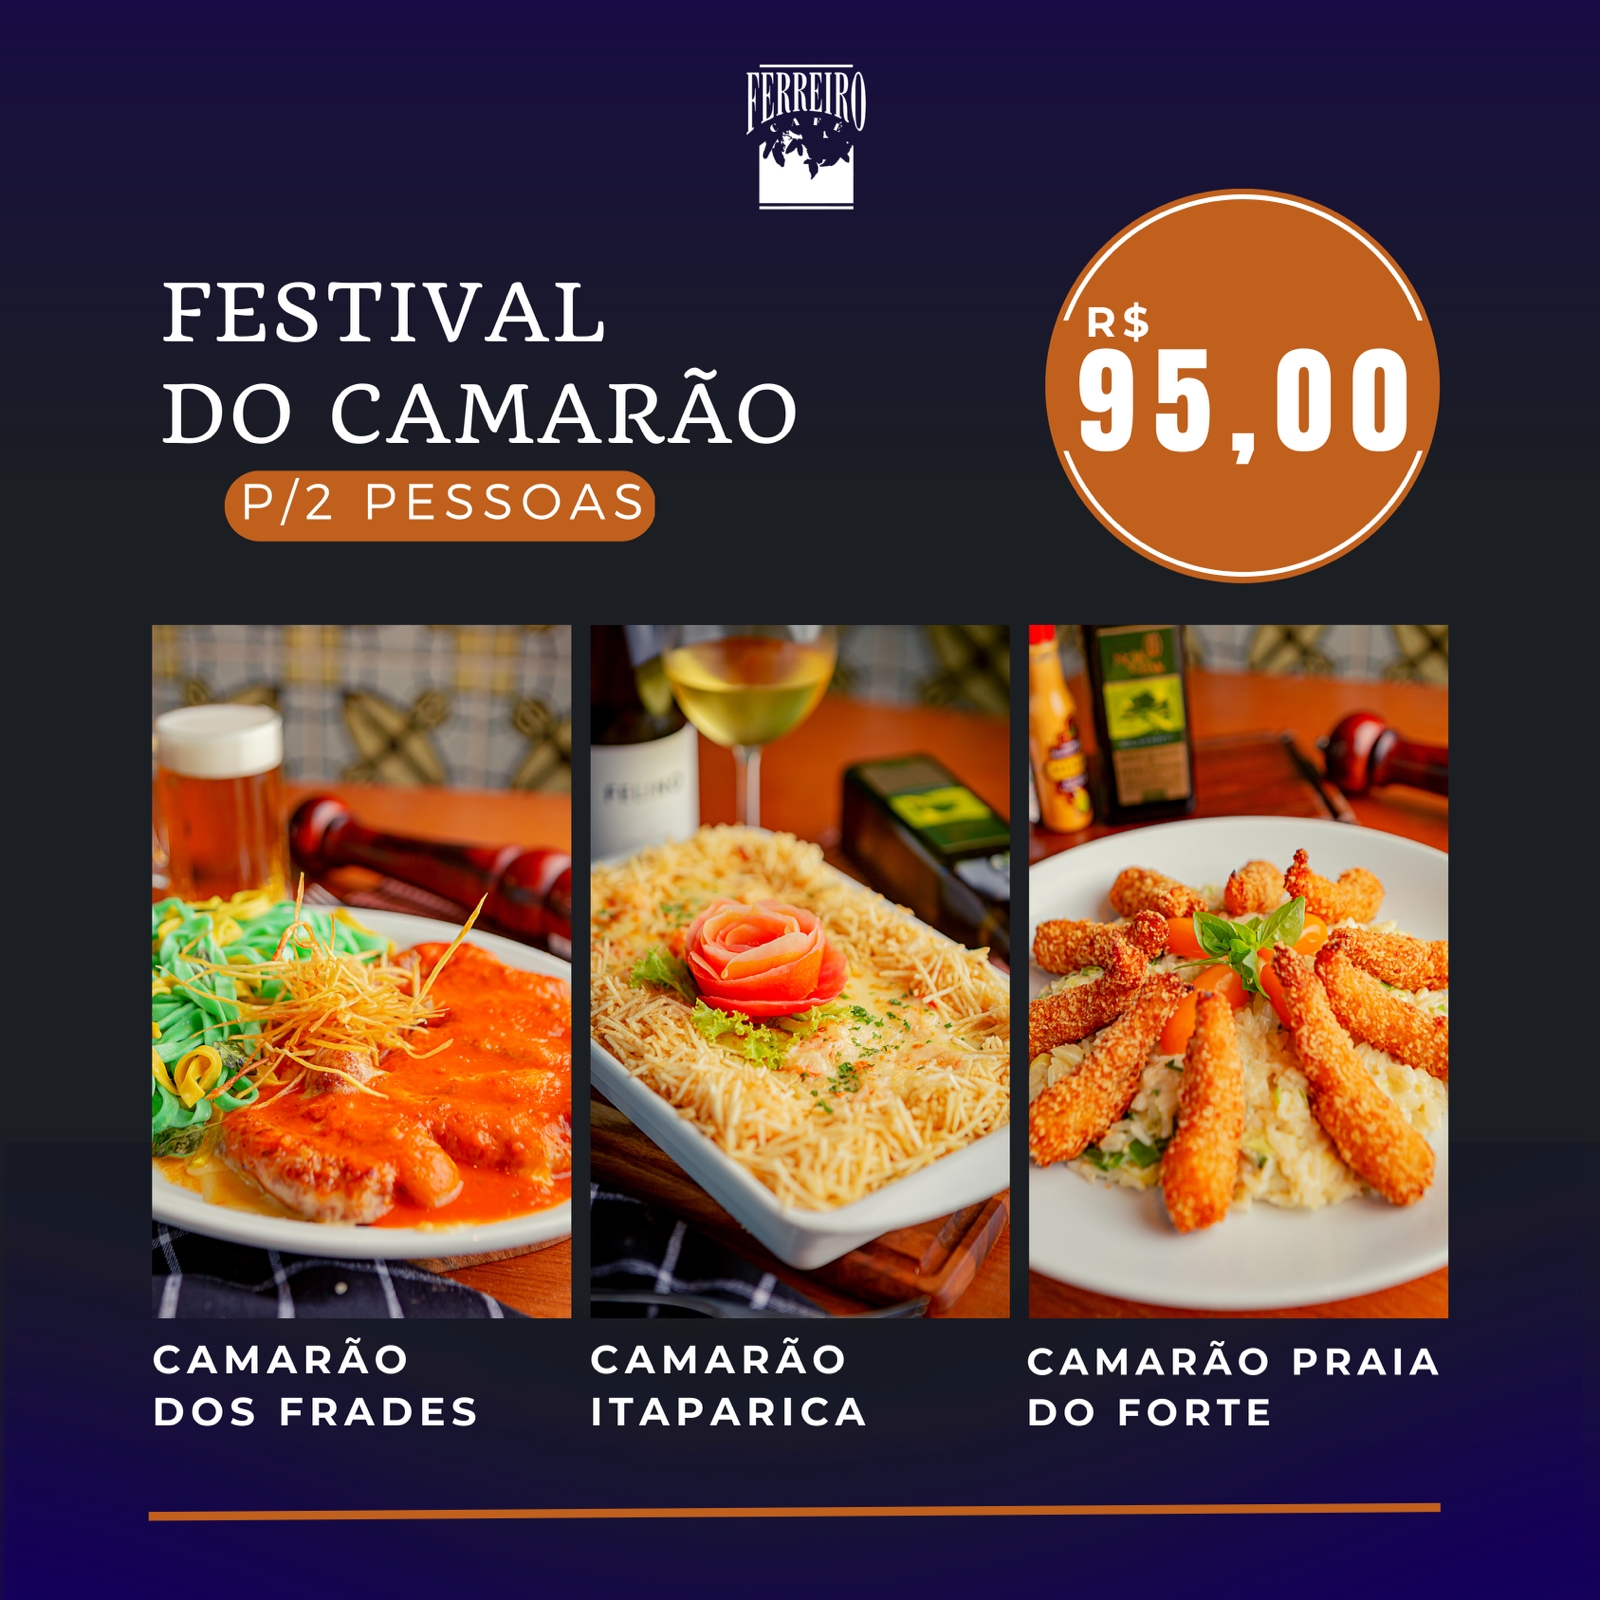 Festival com camarões Ferreiro Café Salvador